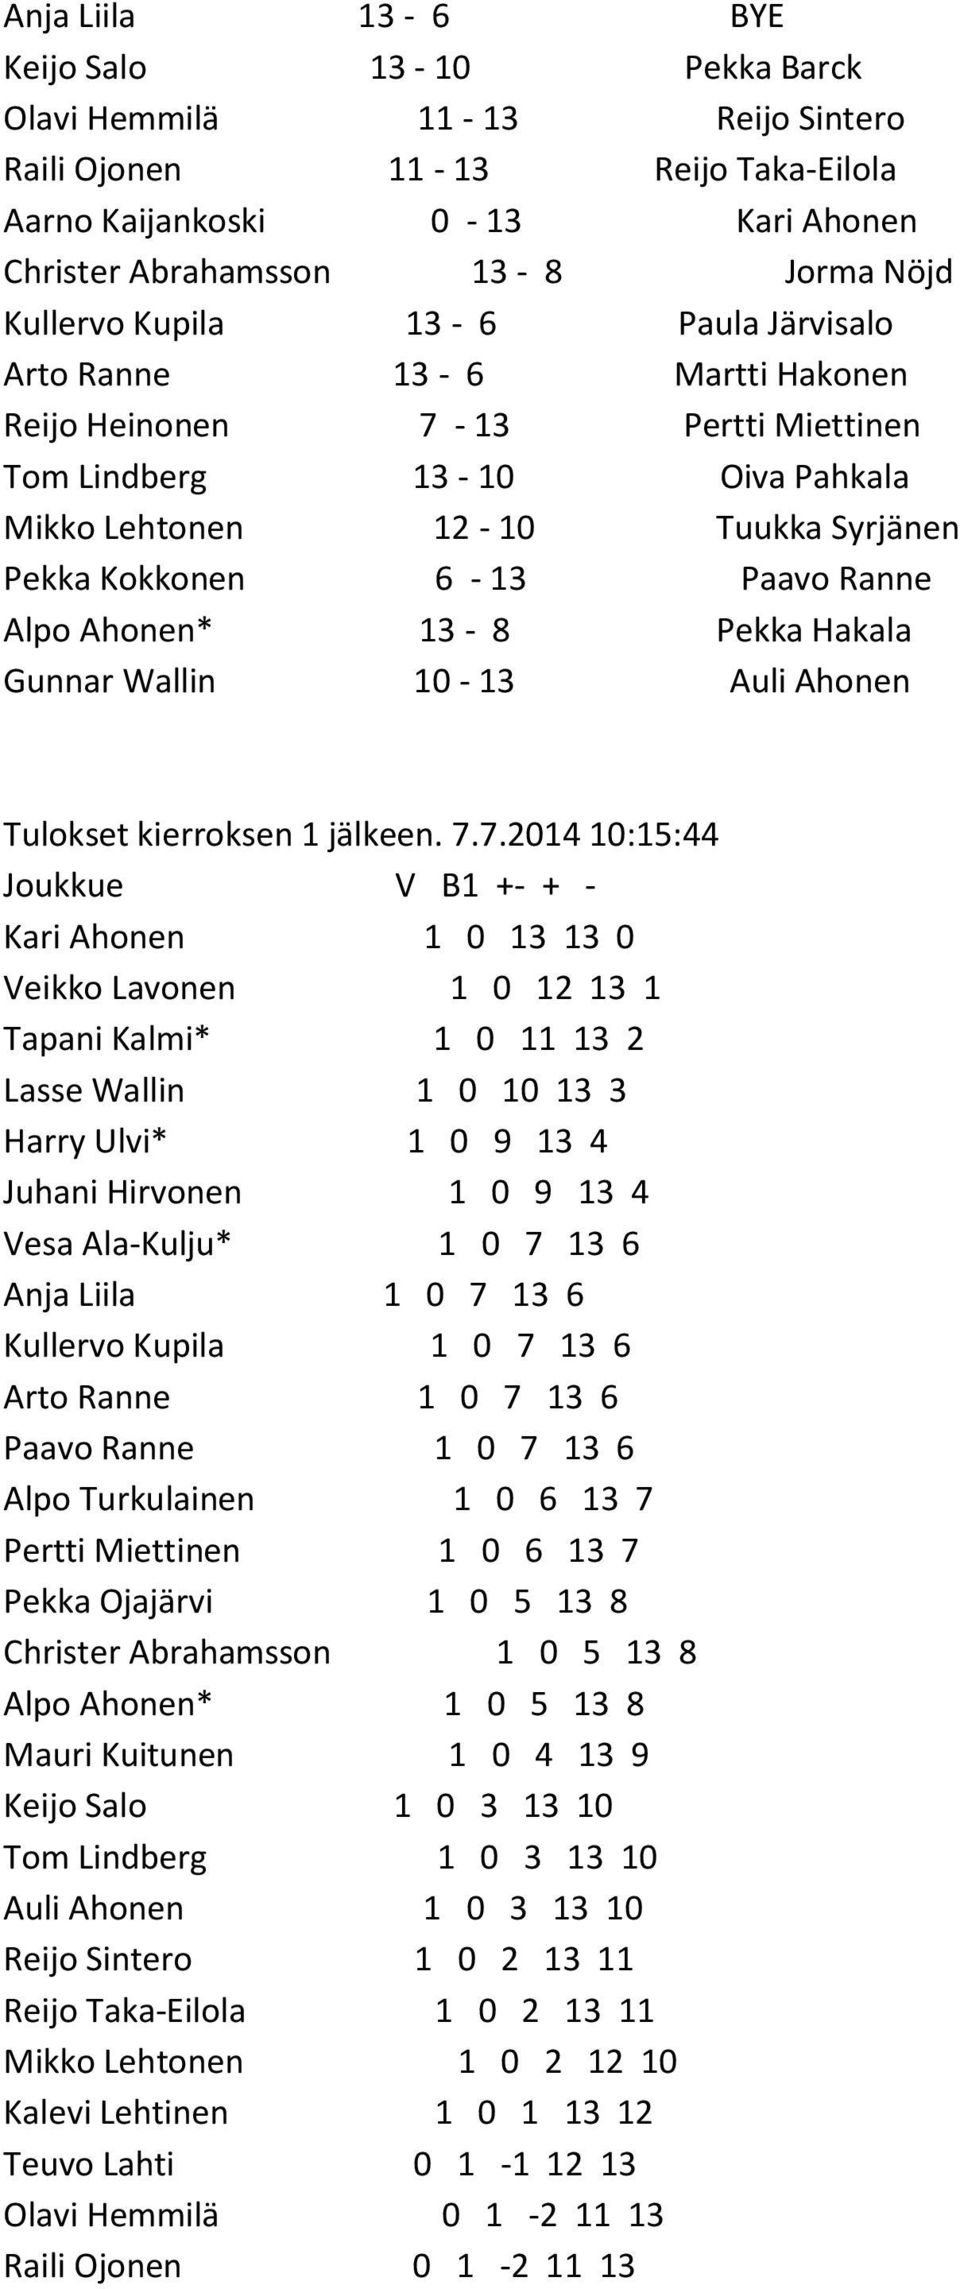 Ranne Alpo Ahonen* 13-8 Pekka Hakala Gunnar Wallin 10-13 Auli Ahonen Tulokset kierroksen 1 jälkeen. 7.